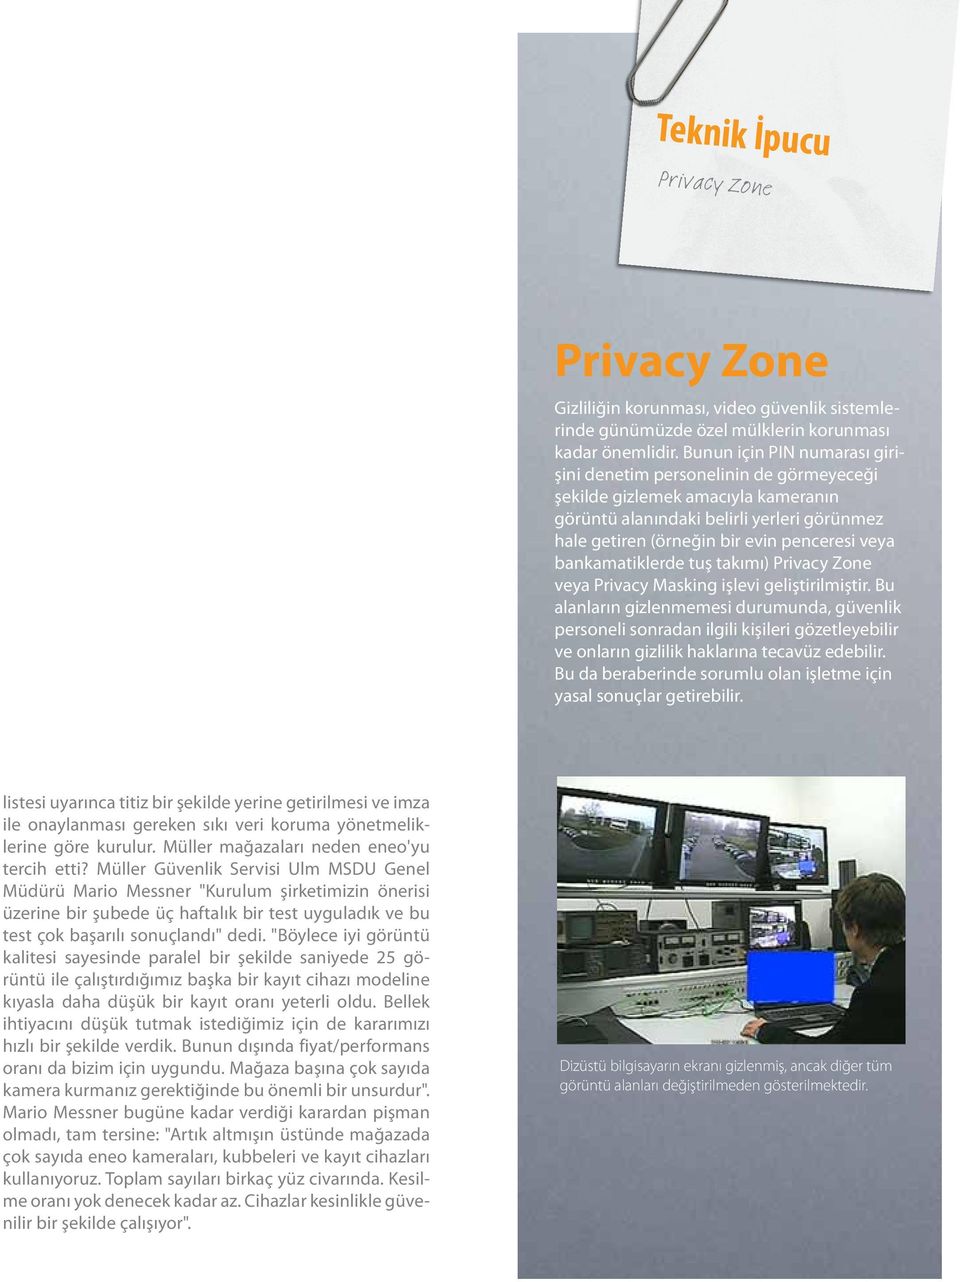 bankamatiklerde tuş takımı) Privacy Zone veya Privacy Masking işlevi geliştirilmiştir.